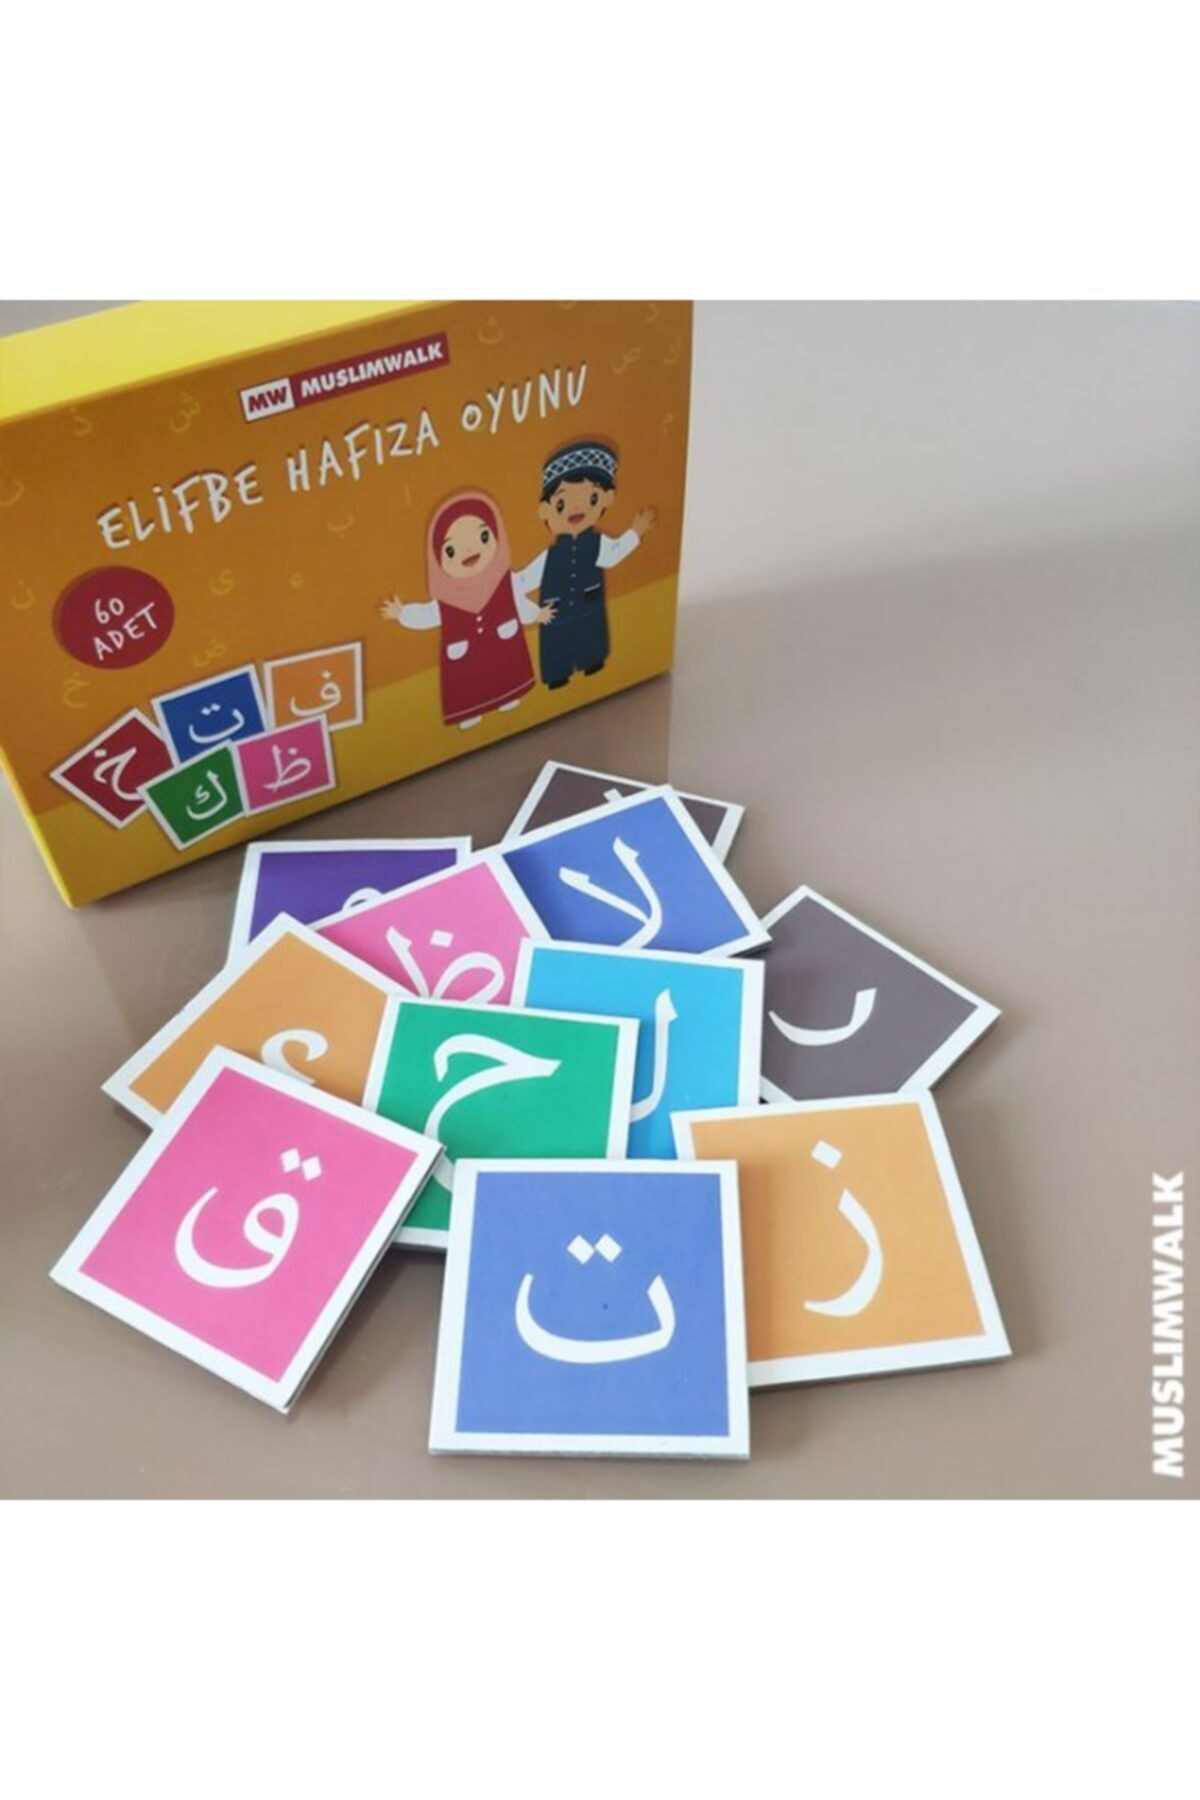 MuslimWalk Elifbe Hafıza Oyunu – Islami Eğitici Oyun (+3)